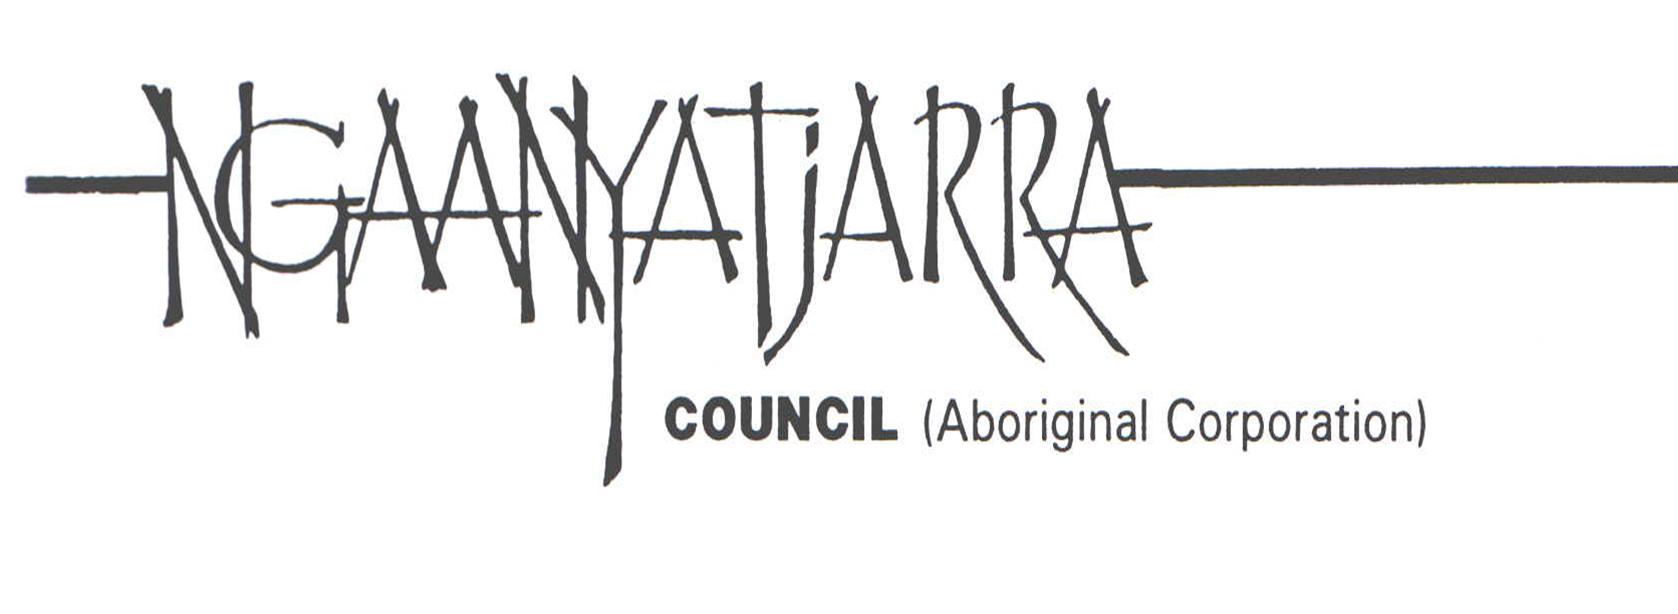 Ngaanyatjarra Council Aboriginal Corporation